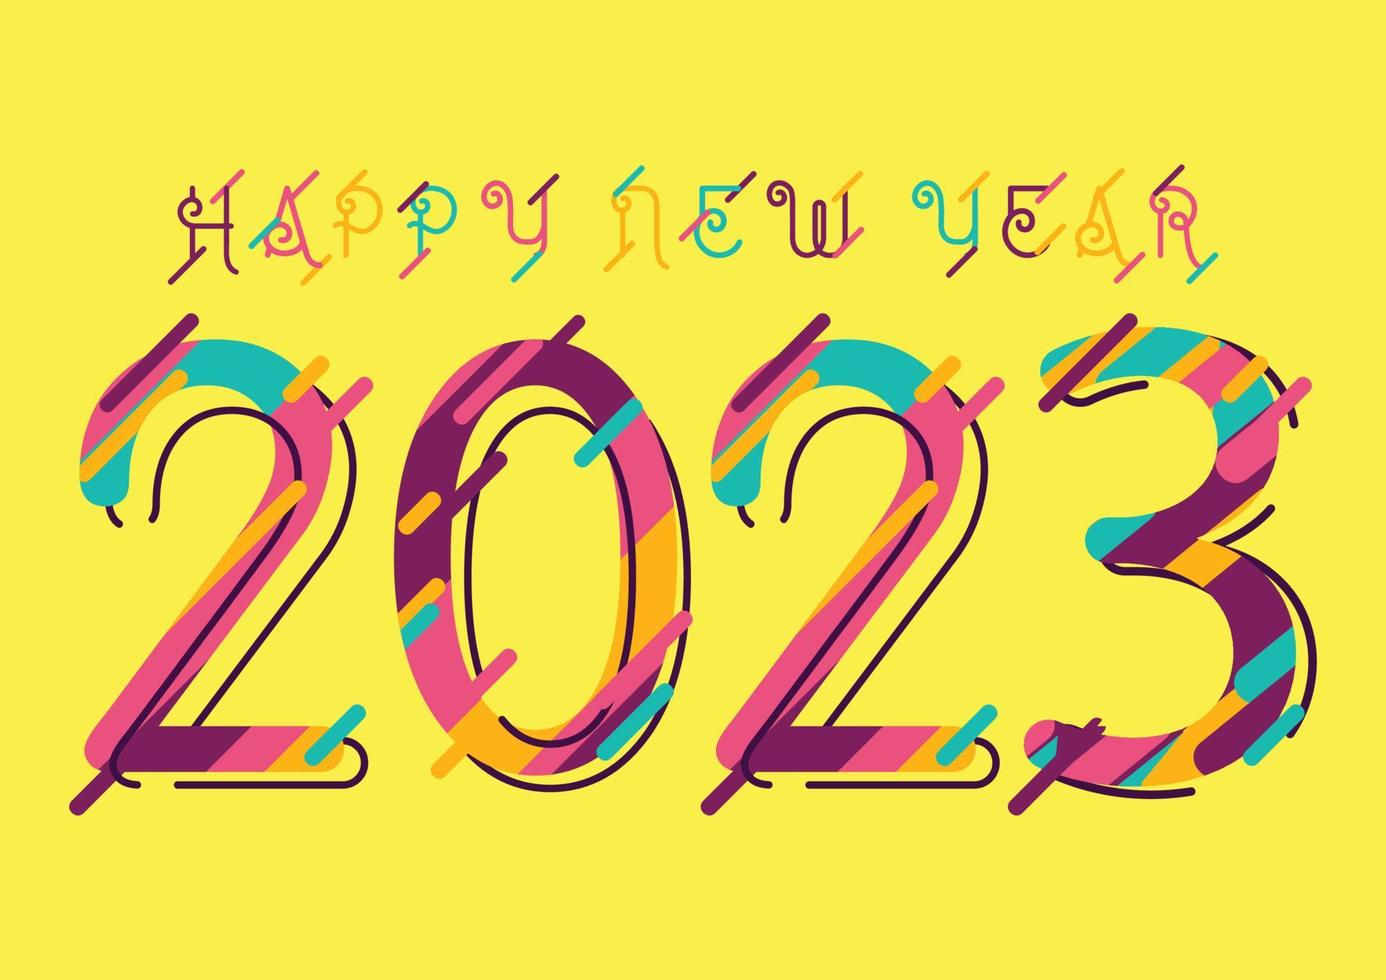 2023 Frohes neues Jahr-Grußkarte mit abstrakten bunten Zahlen für Broschürendesign oder Business-Tagebuch-Cover. Vektor-Illustration. vektor